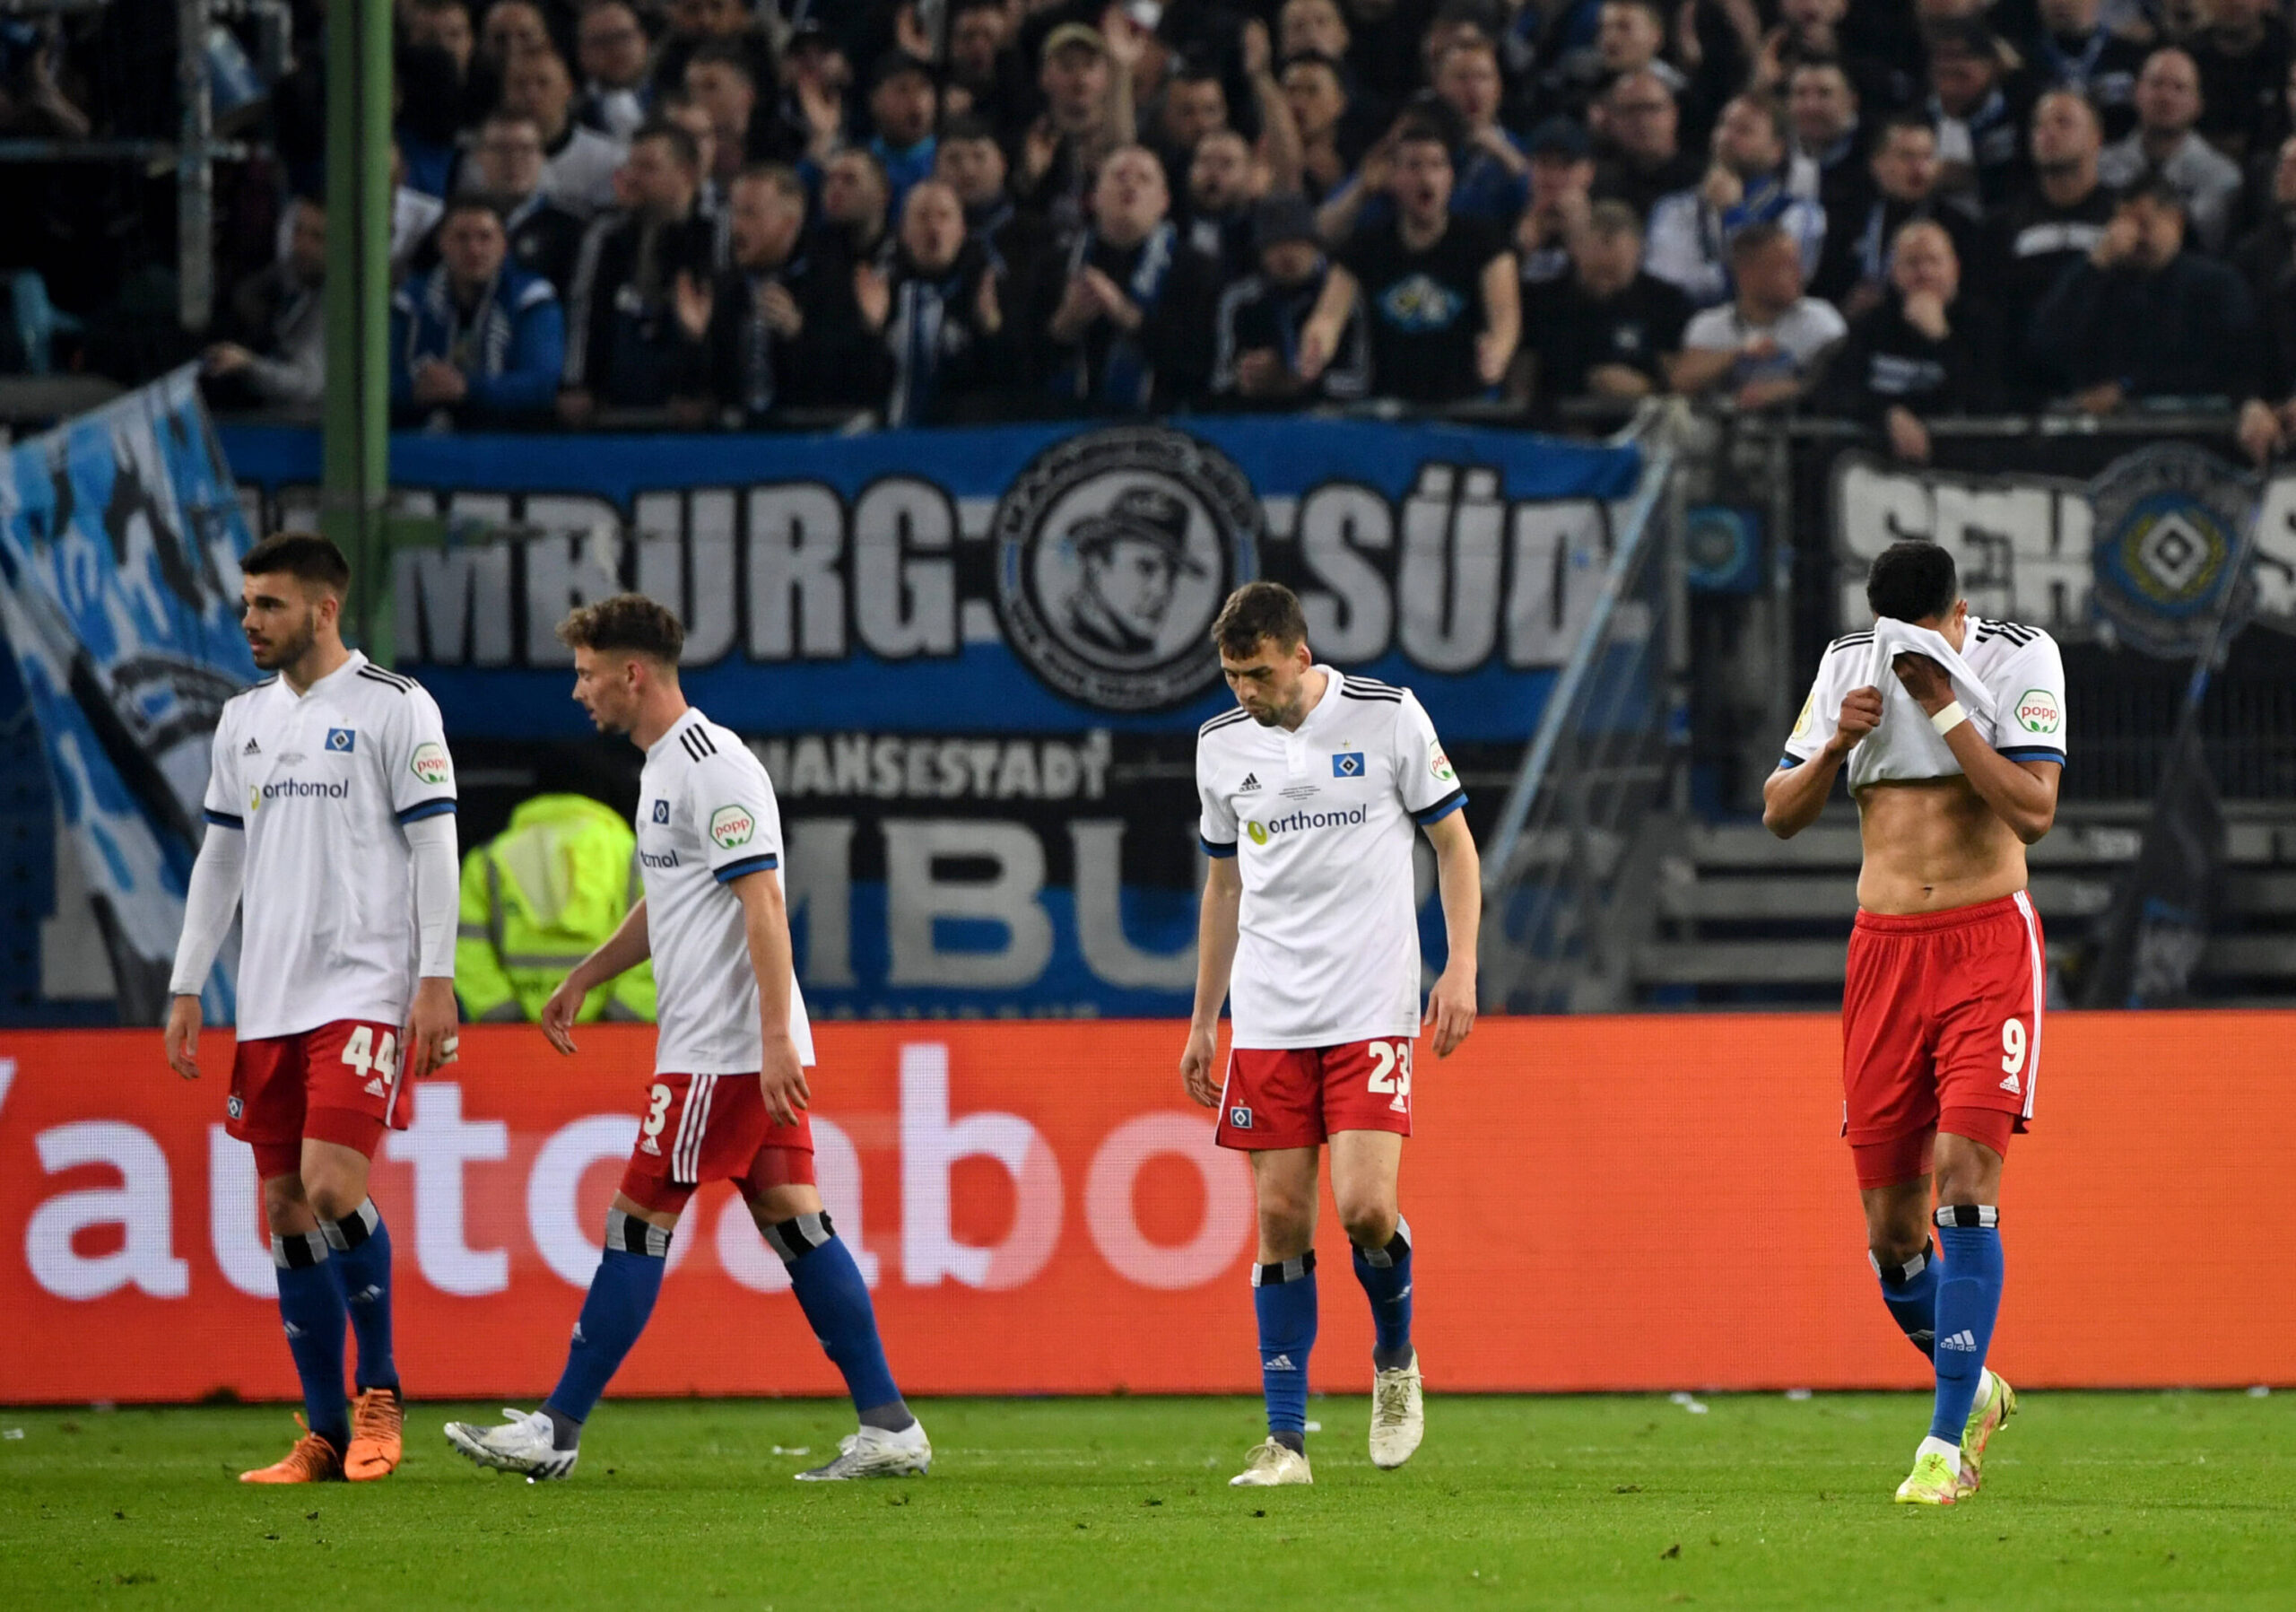 Die Enttäuschung ist groß: Der HSV verpasst den Einzug ins Finale des DFB-Pokals.